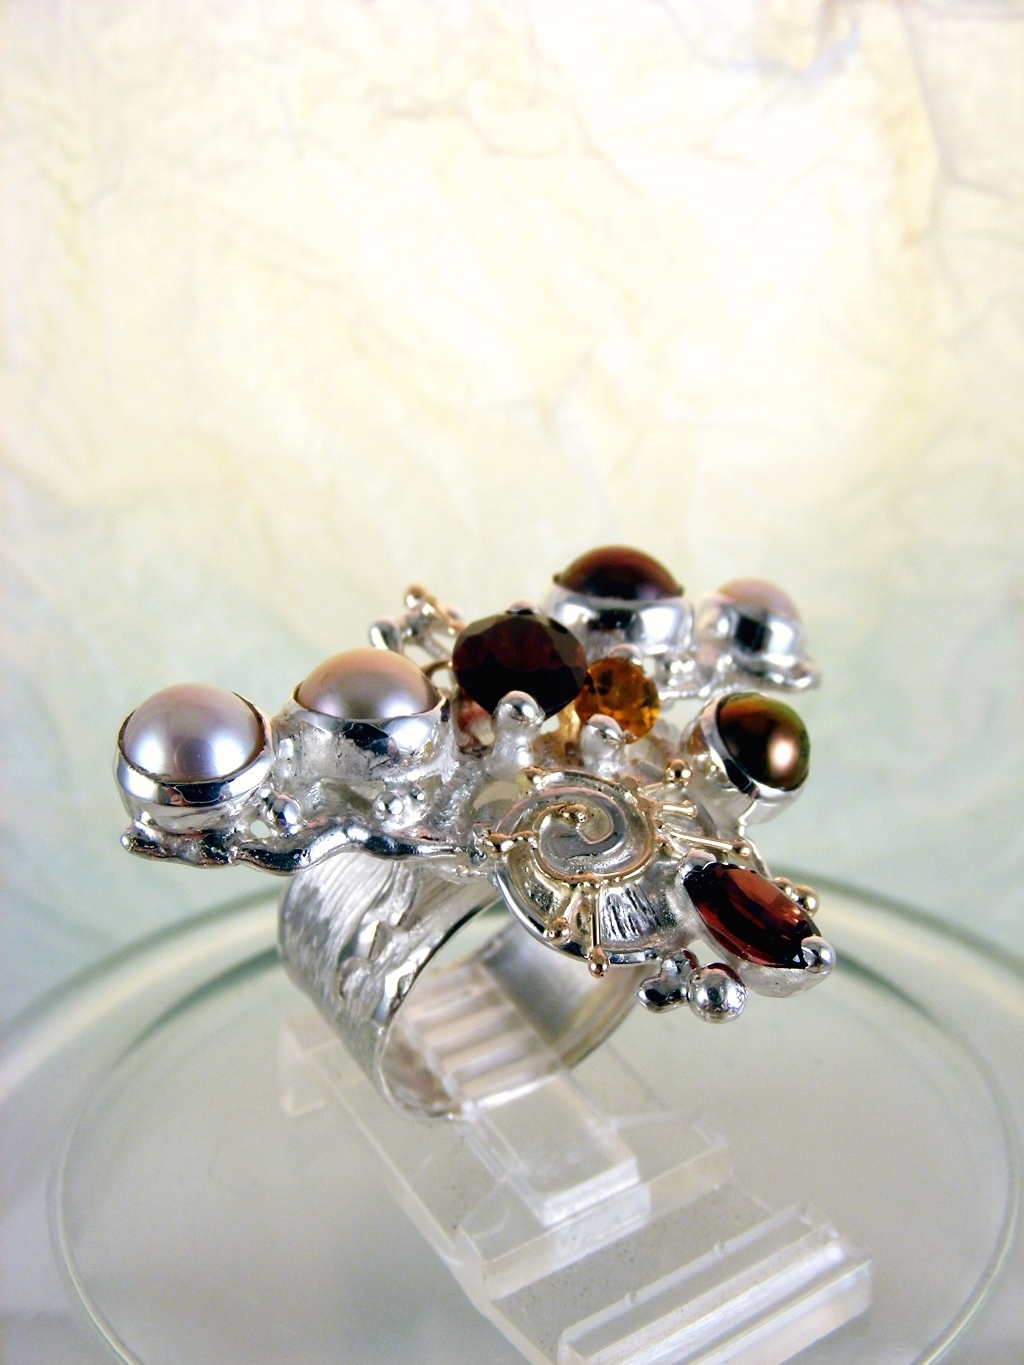 módní šperky, modní styl, sběratelská položka, šperky vyrobené ze stříbra a zlata, ručně vyráběný prsten s granátem a perlou, ručně vyráběný prsten s granátem a citrinem, ručně vyráběný prsten s citrinem a perlou, Gregory Pyra Piro prstýnek 3627